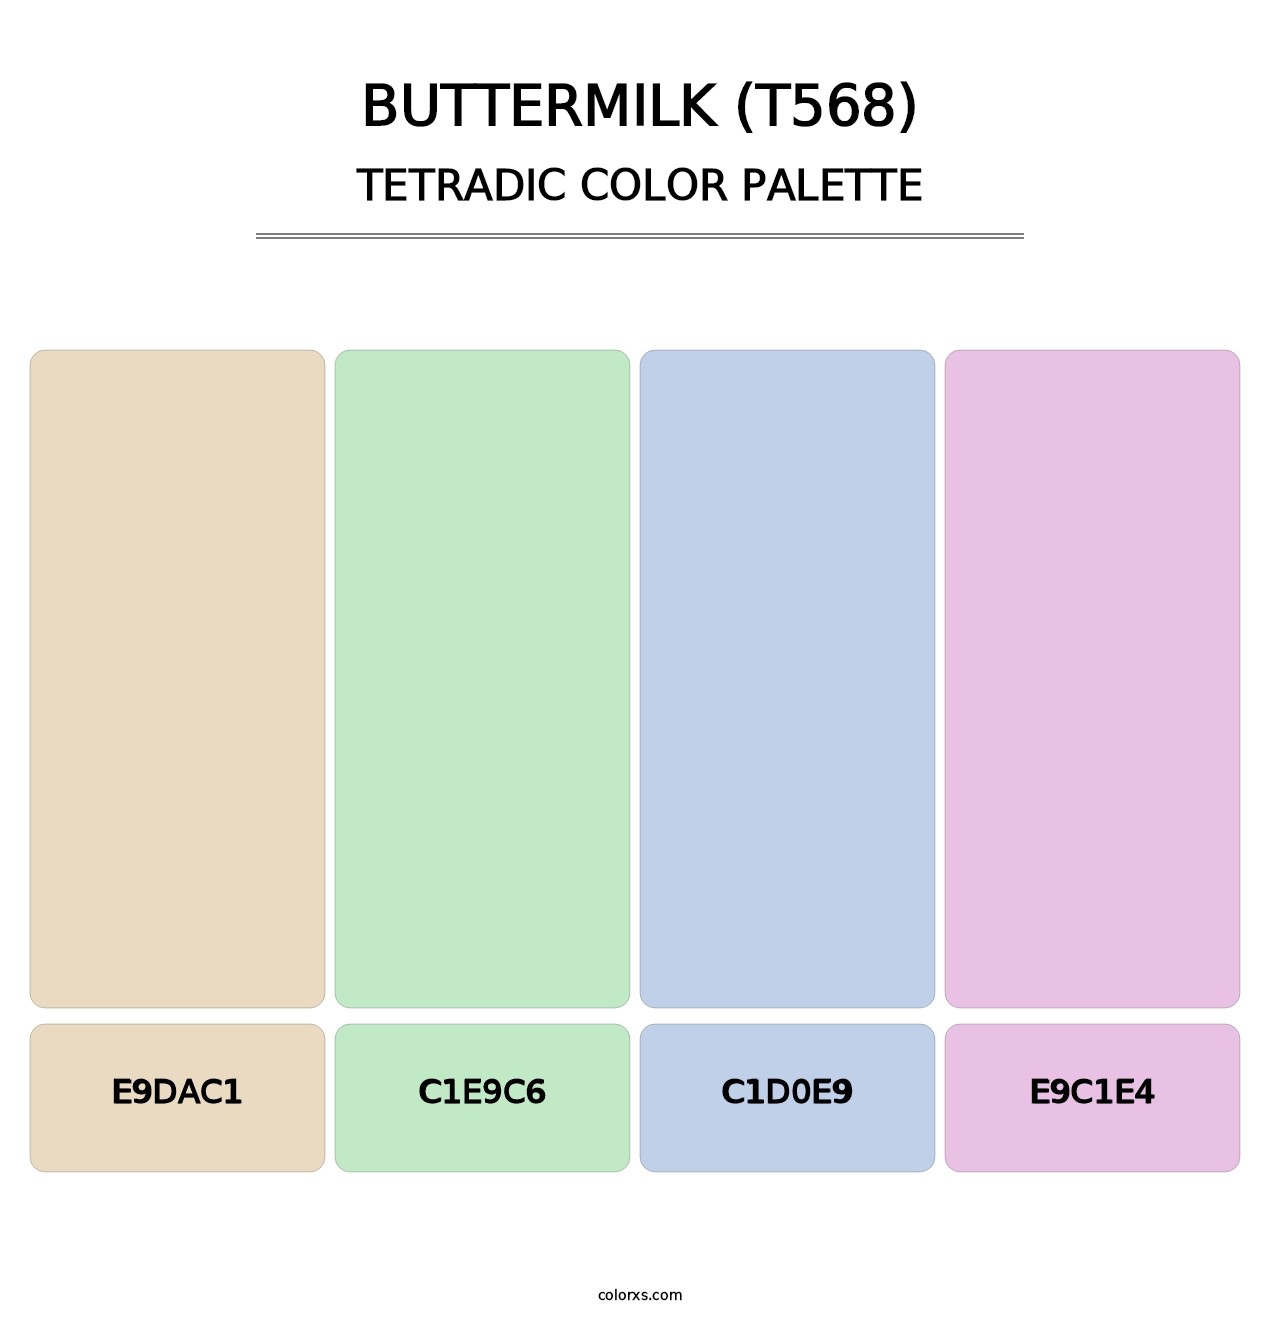 Buttermilk (T568) - Tetradic Color Palette